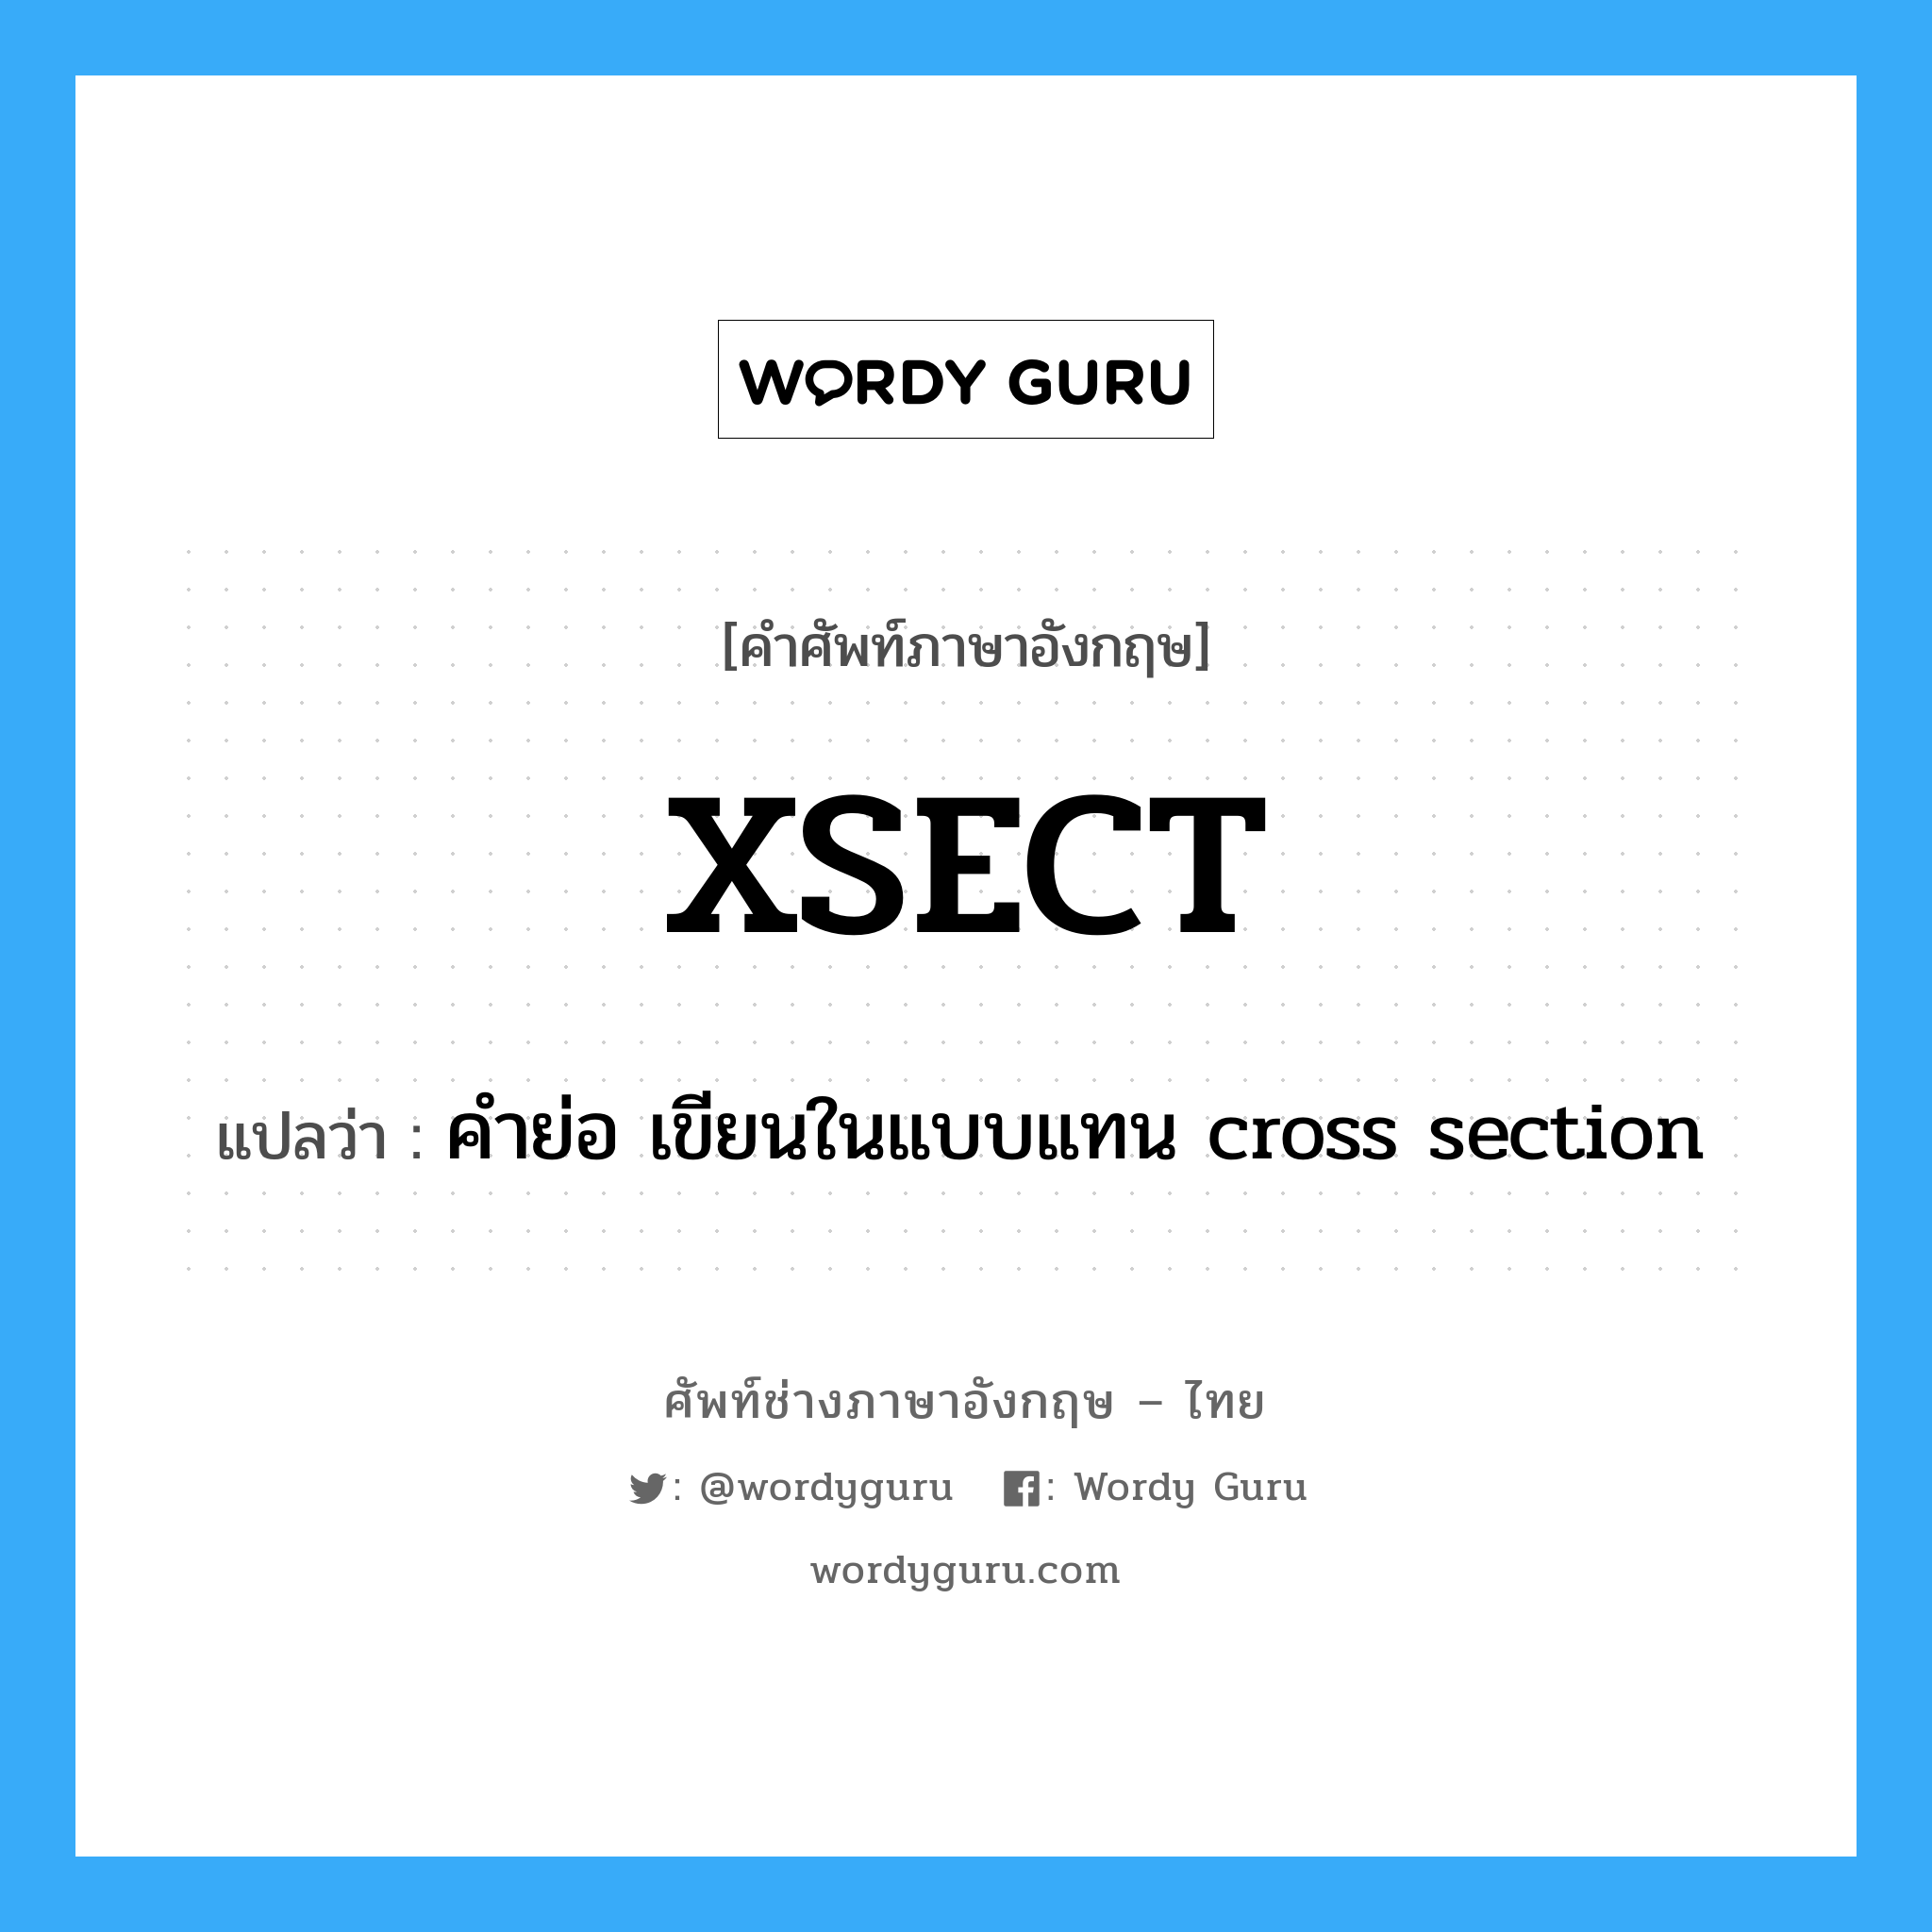 คำย่อ เขียนในแบบแทน cross section ภาษาอังกฤษ?, คำศัพท์ช่างภาษาอังกฤษ - ไทย คำย่อ เขียนในแบบแทน cross section คำศัพท์ภาษาอังกฤษ คำย่อ เขียนในแบบแทน cross section แปลว่า XSECT